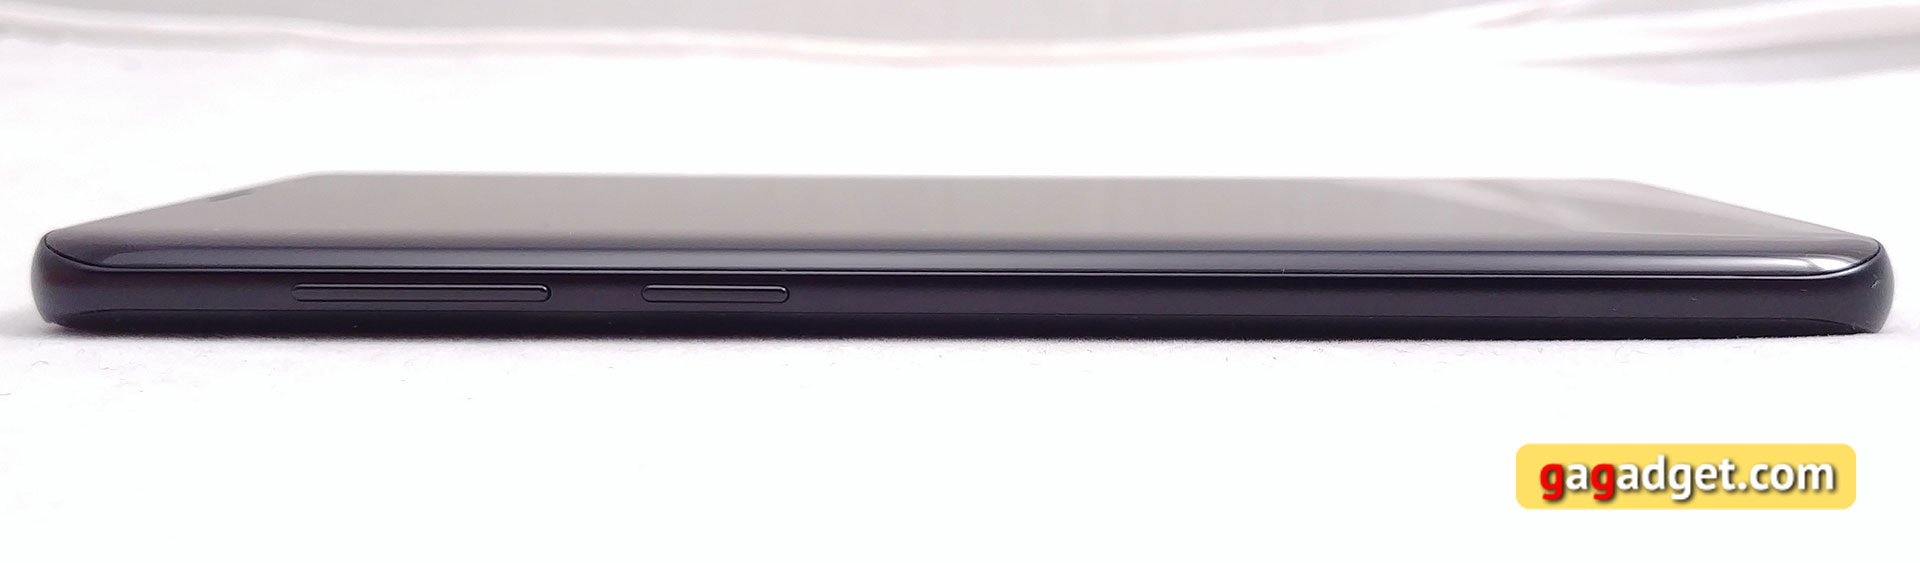 Обзор Samsung Galaxy S9+: нет предела совершенству-8